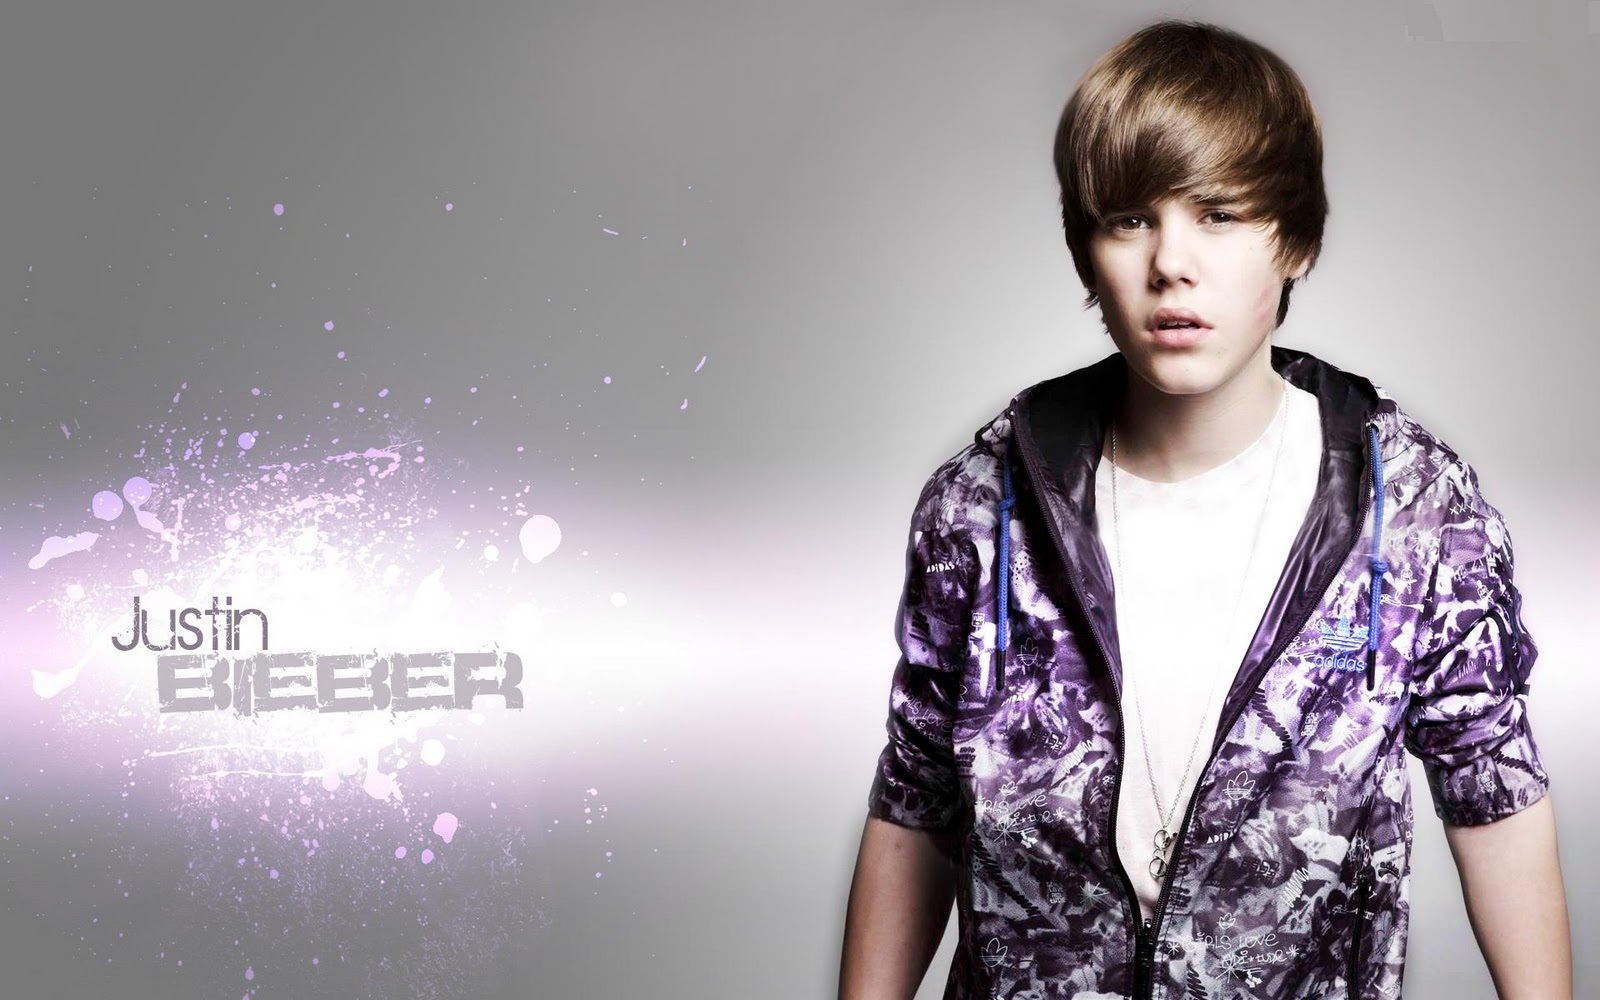 http://3.bp.blogspot.com/-WCvQ-AGv3A4/T0E1Ed2RAAI/AAAAAAAAMT8/mCHypXxtoHE/s1600/Justin-Bieber-New-2012-Wallpapers-04.jpg